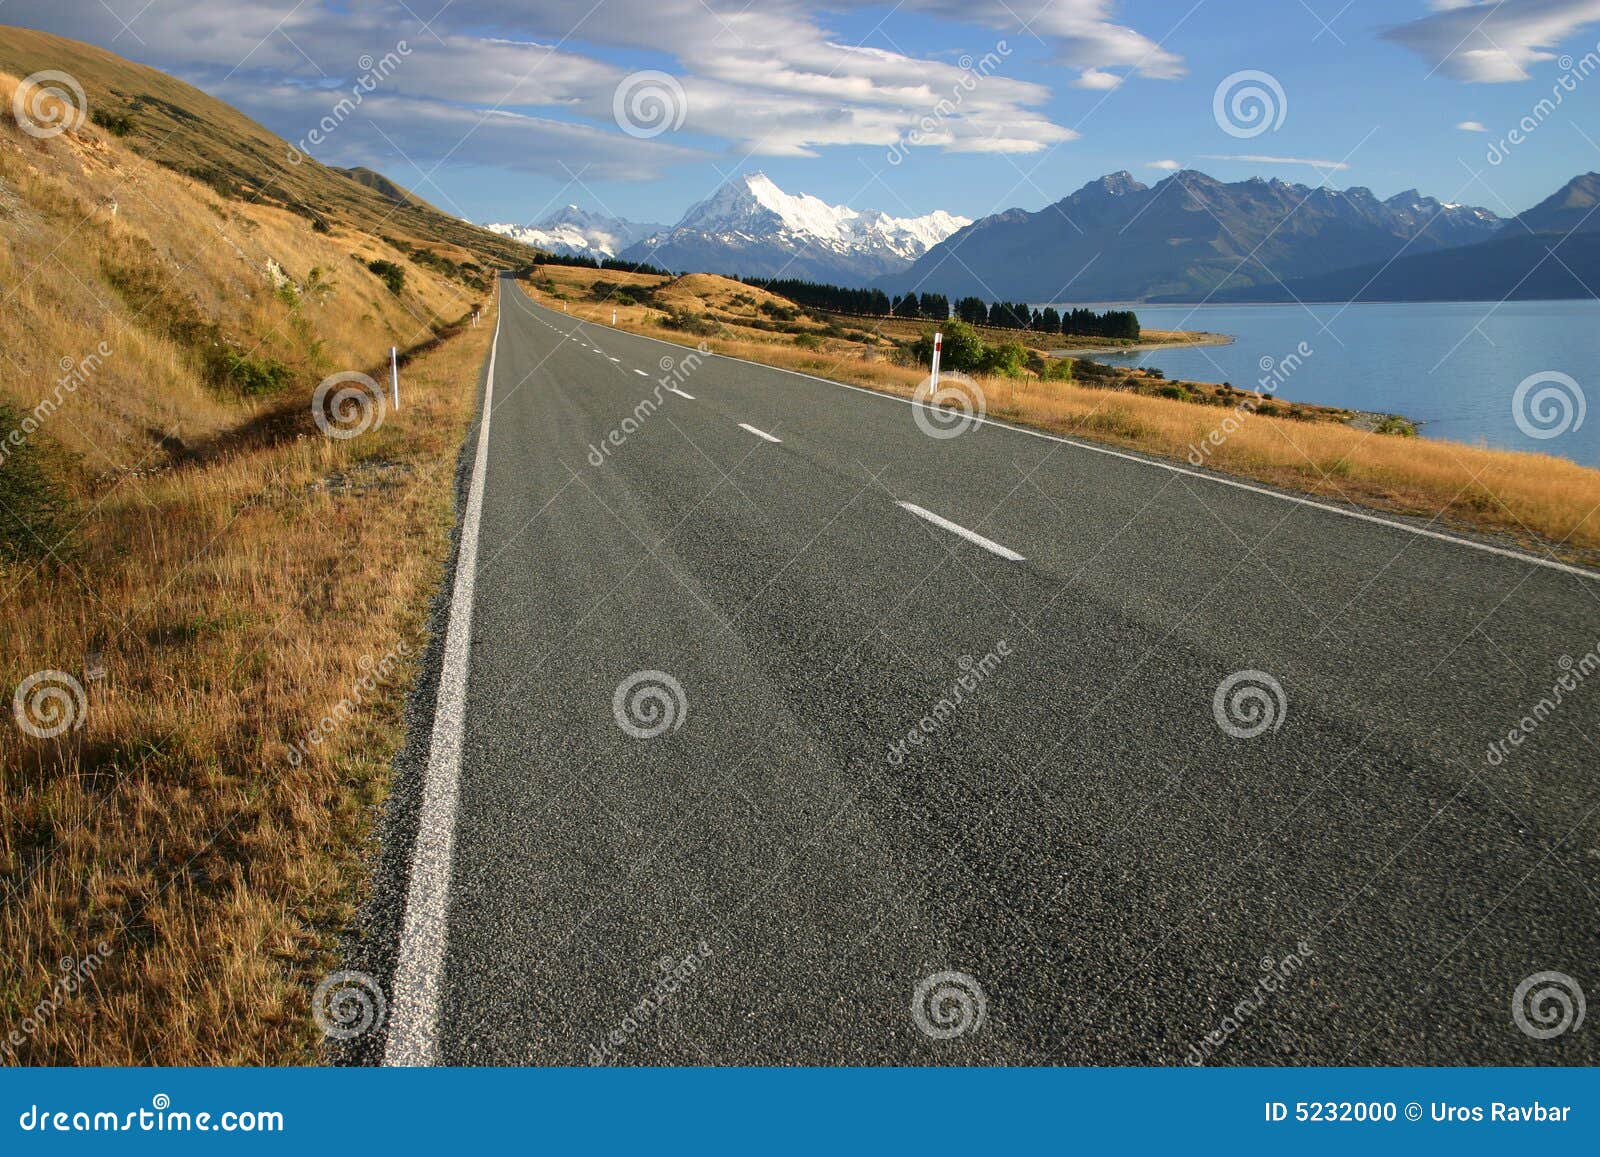 regional road at lake pukaki